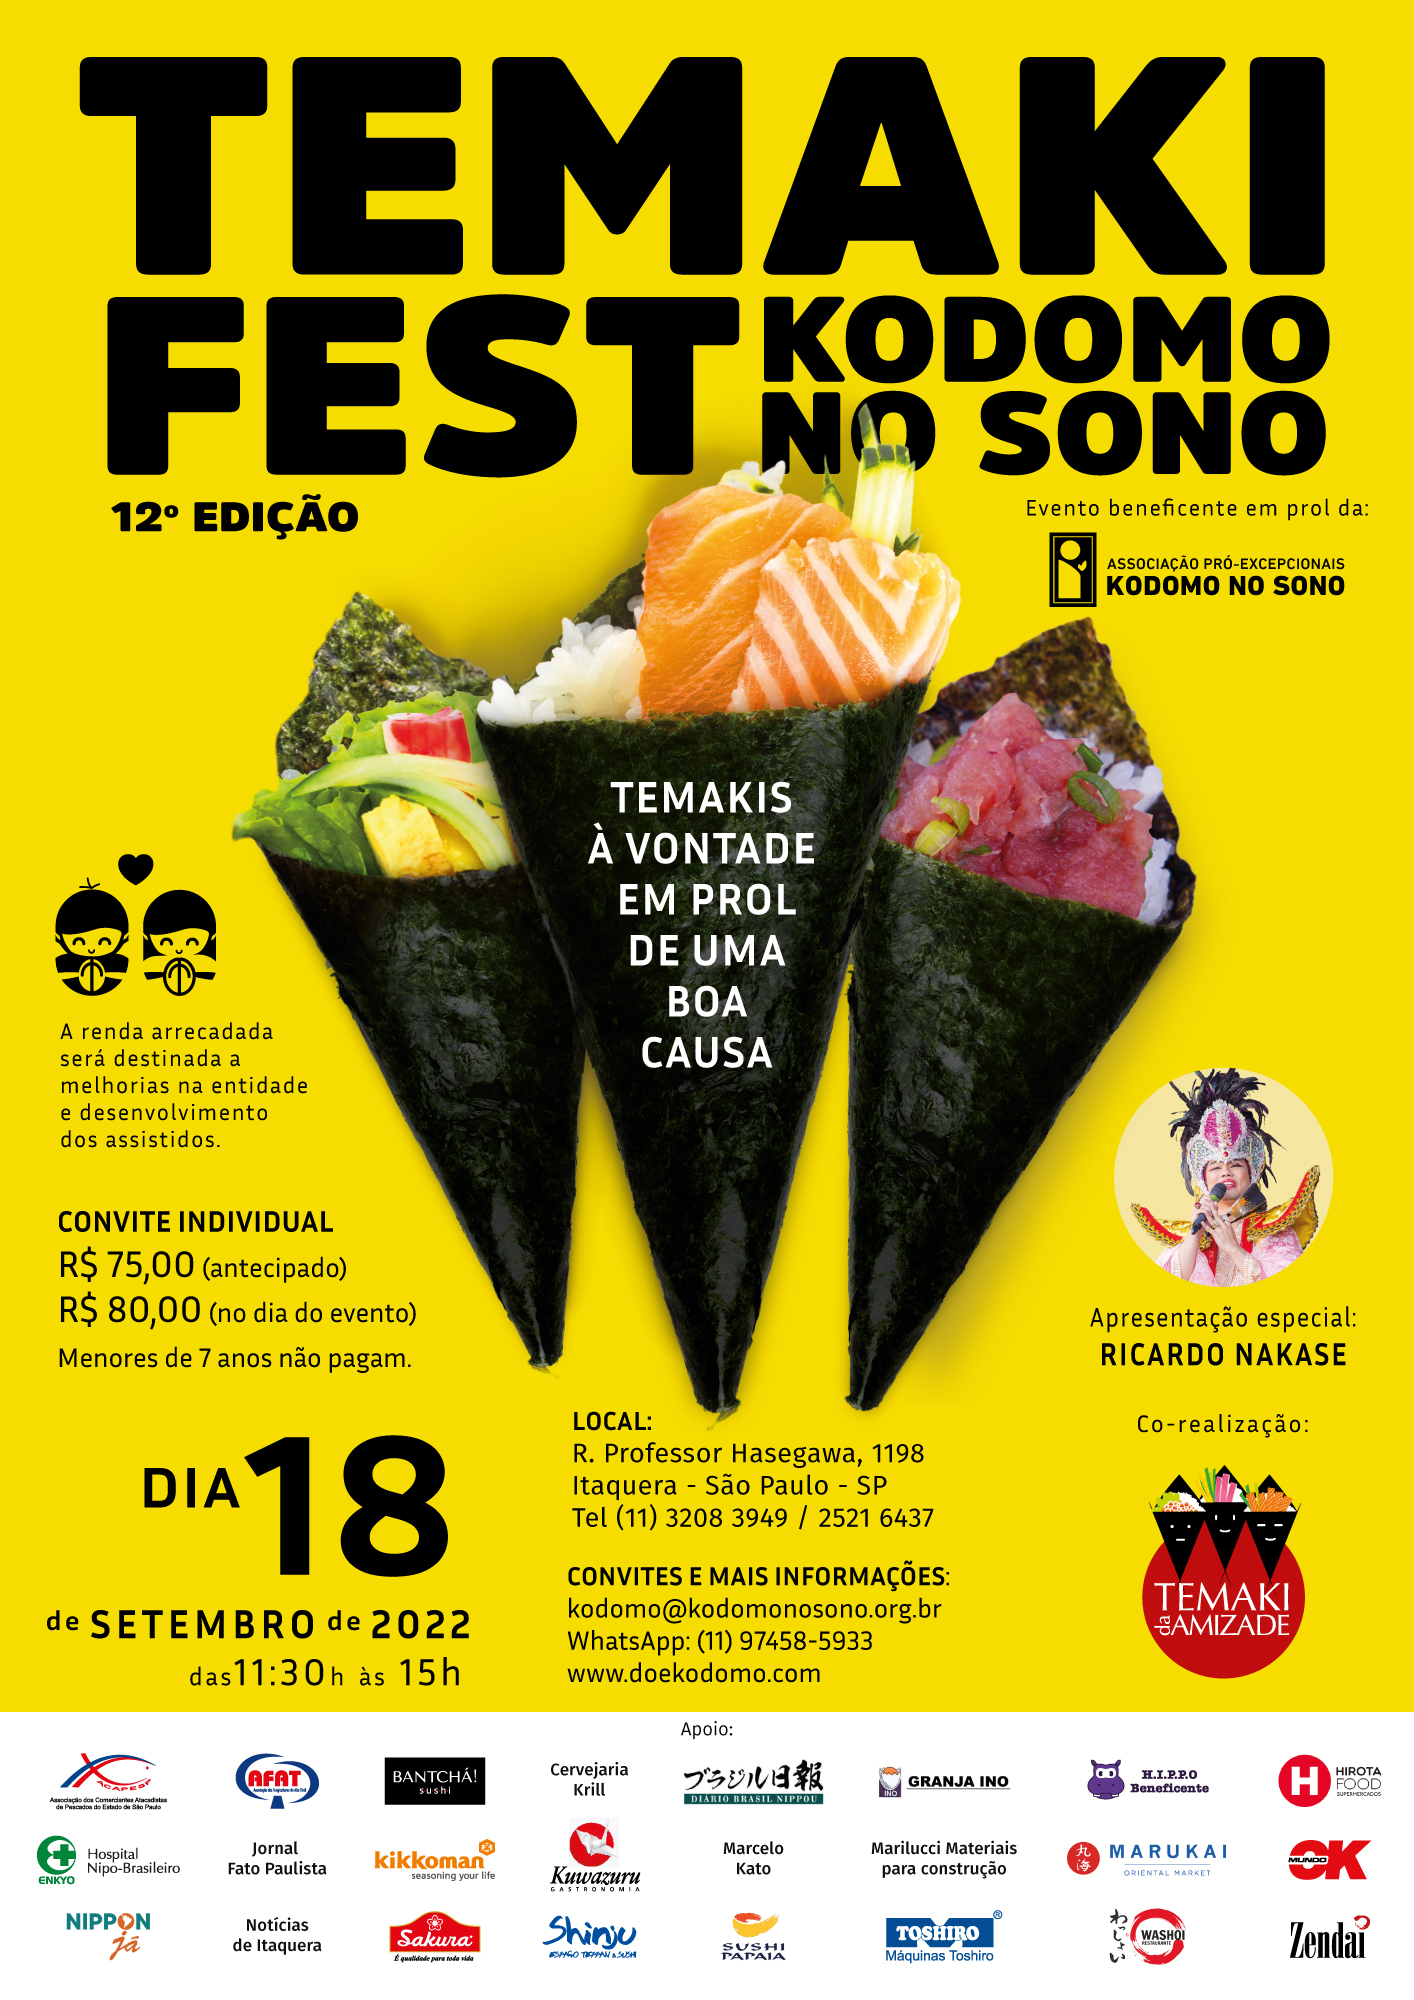 Temaki Fest 2022 Kodomo no Sono